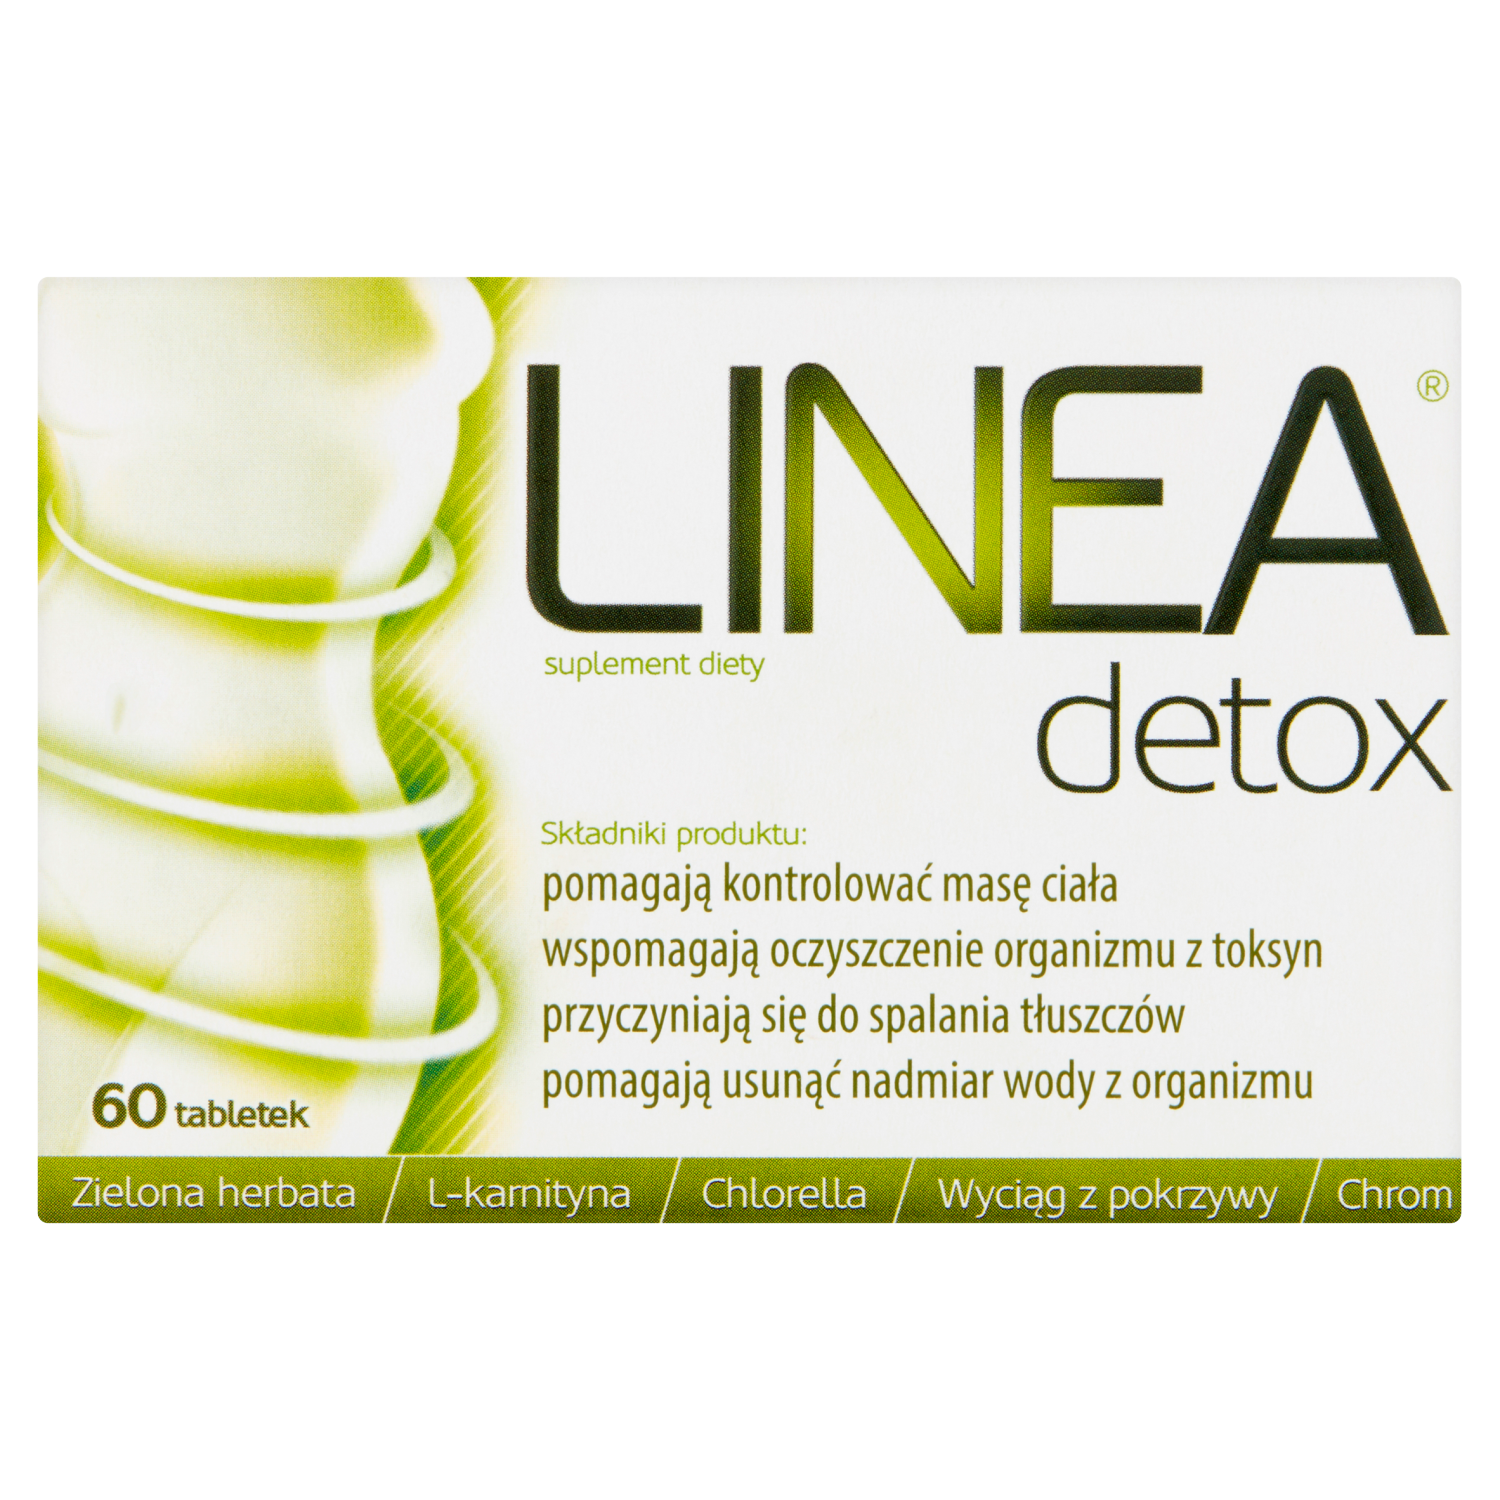 Linea Detox биологически активная добавка, 60 таблеток/1 упаковка